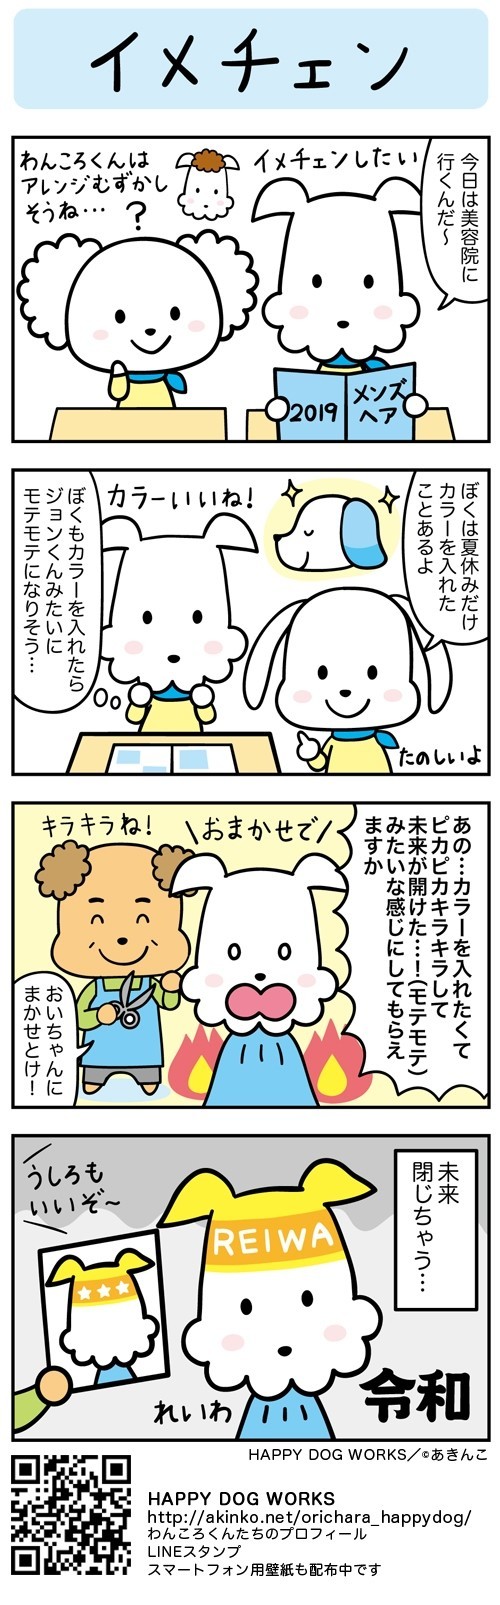 4コマ漫画 イメチェン Happy Dog Worksの日常 あきんこ 忍者犬たろうくん作者 Note